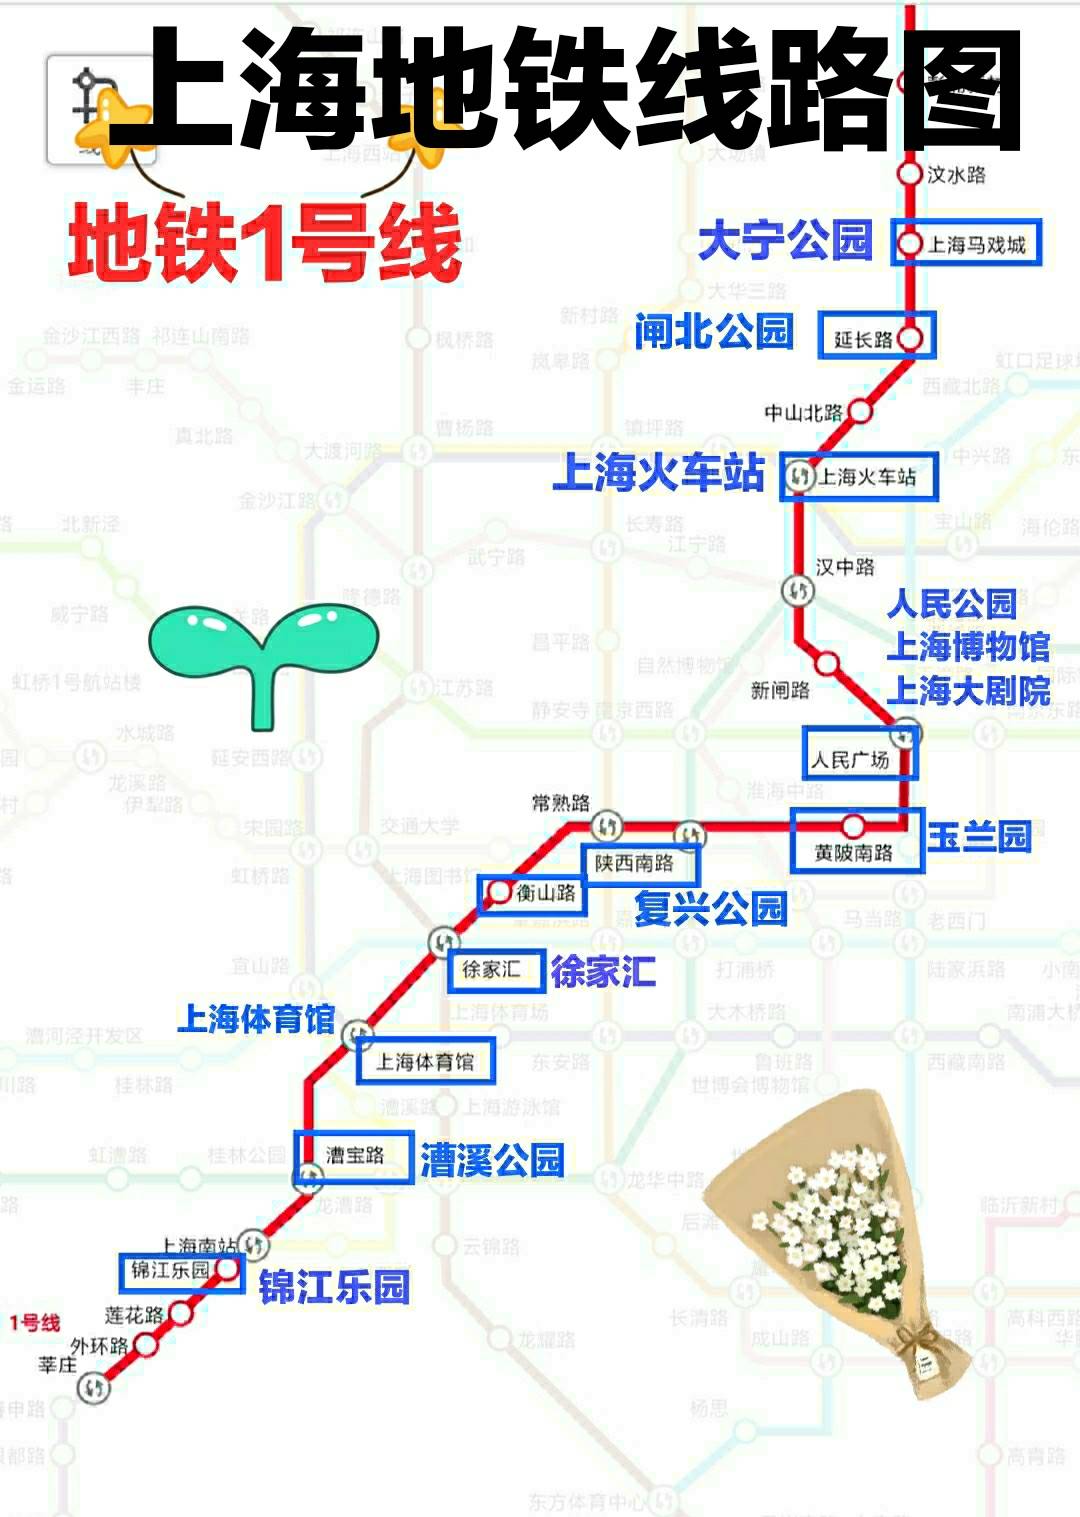 上海地铁沿线部分景点信息 1地铁1号线:  锦江乐园开放时间9:00-17